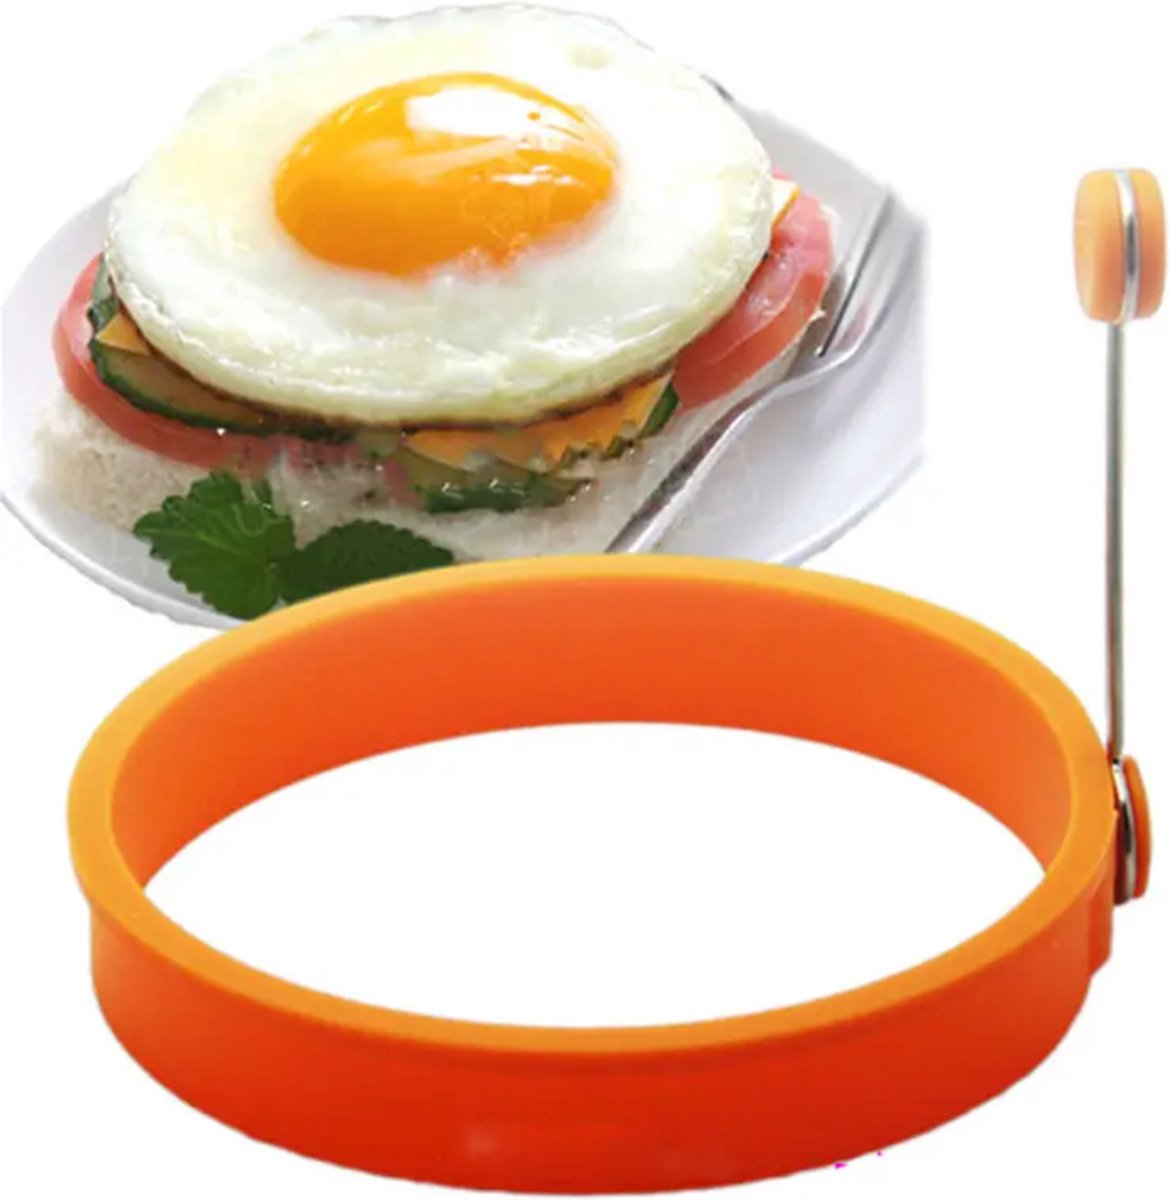 Ei ring Oranje - Siliconen Ei-ring - Bakring - Pannekoekenring - Pancake ring - Bakvorm keuken - Pan - Ei Bakvorm - Bakaccesoire